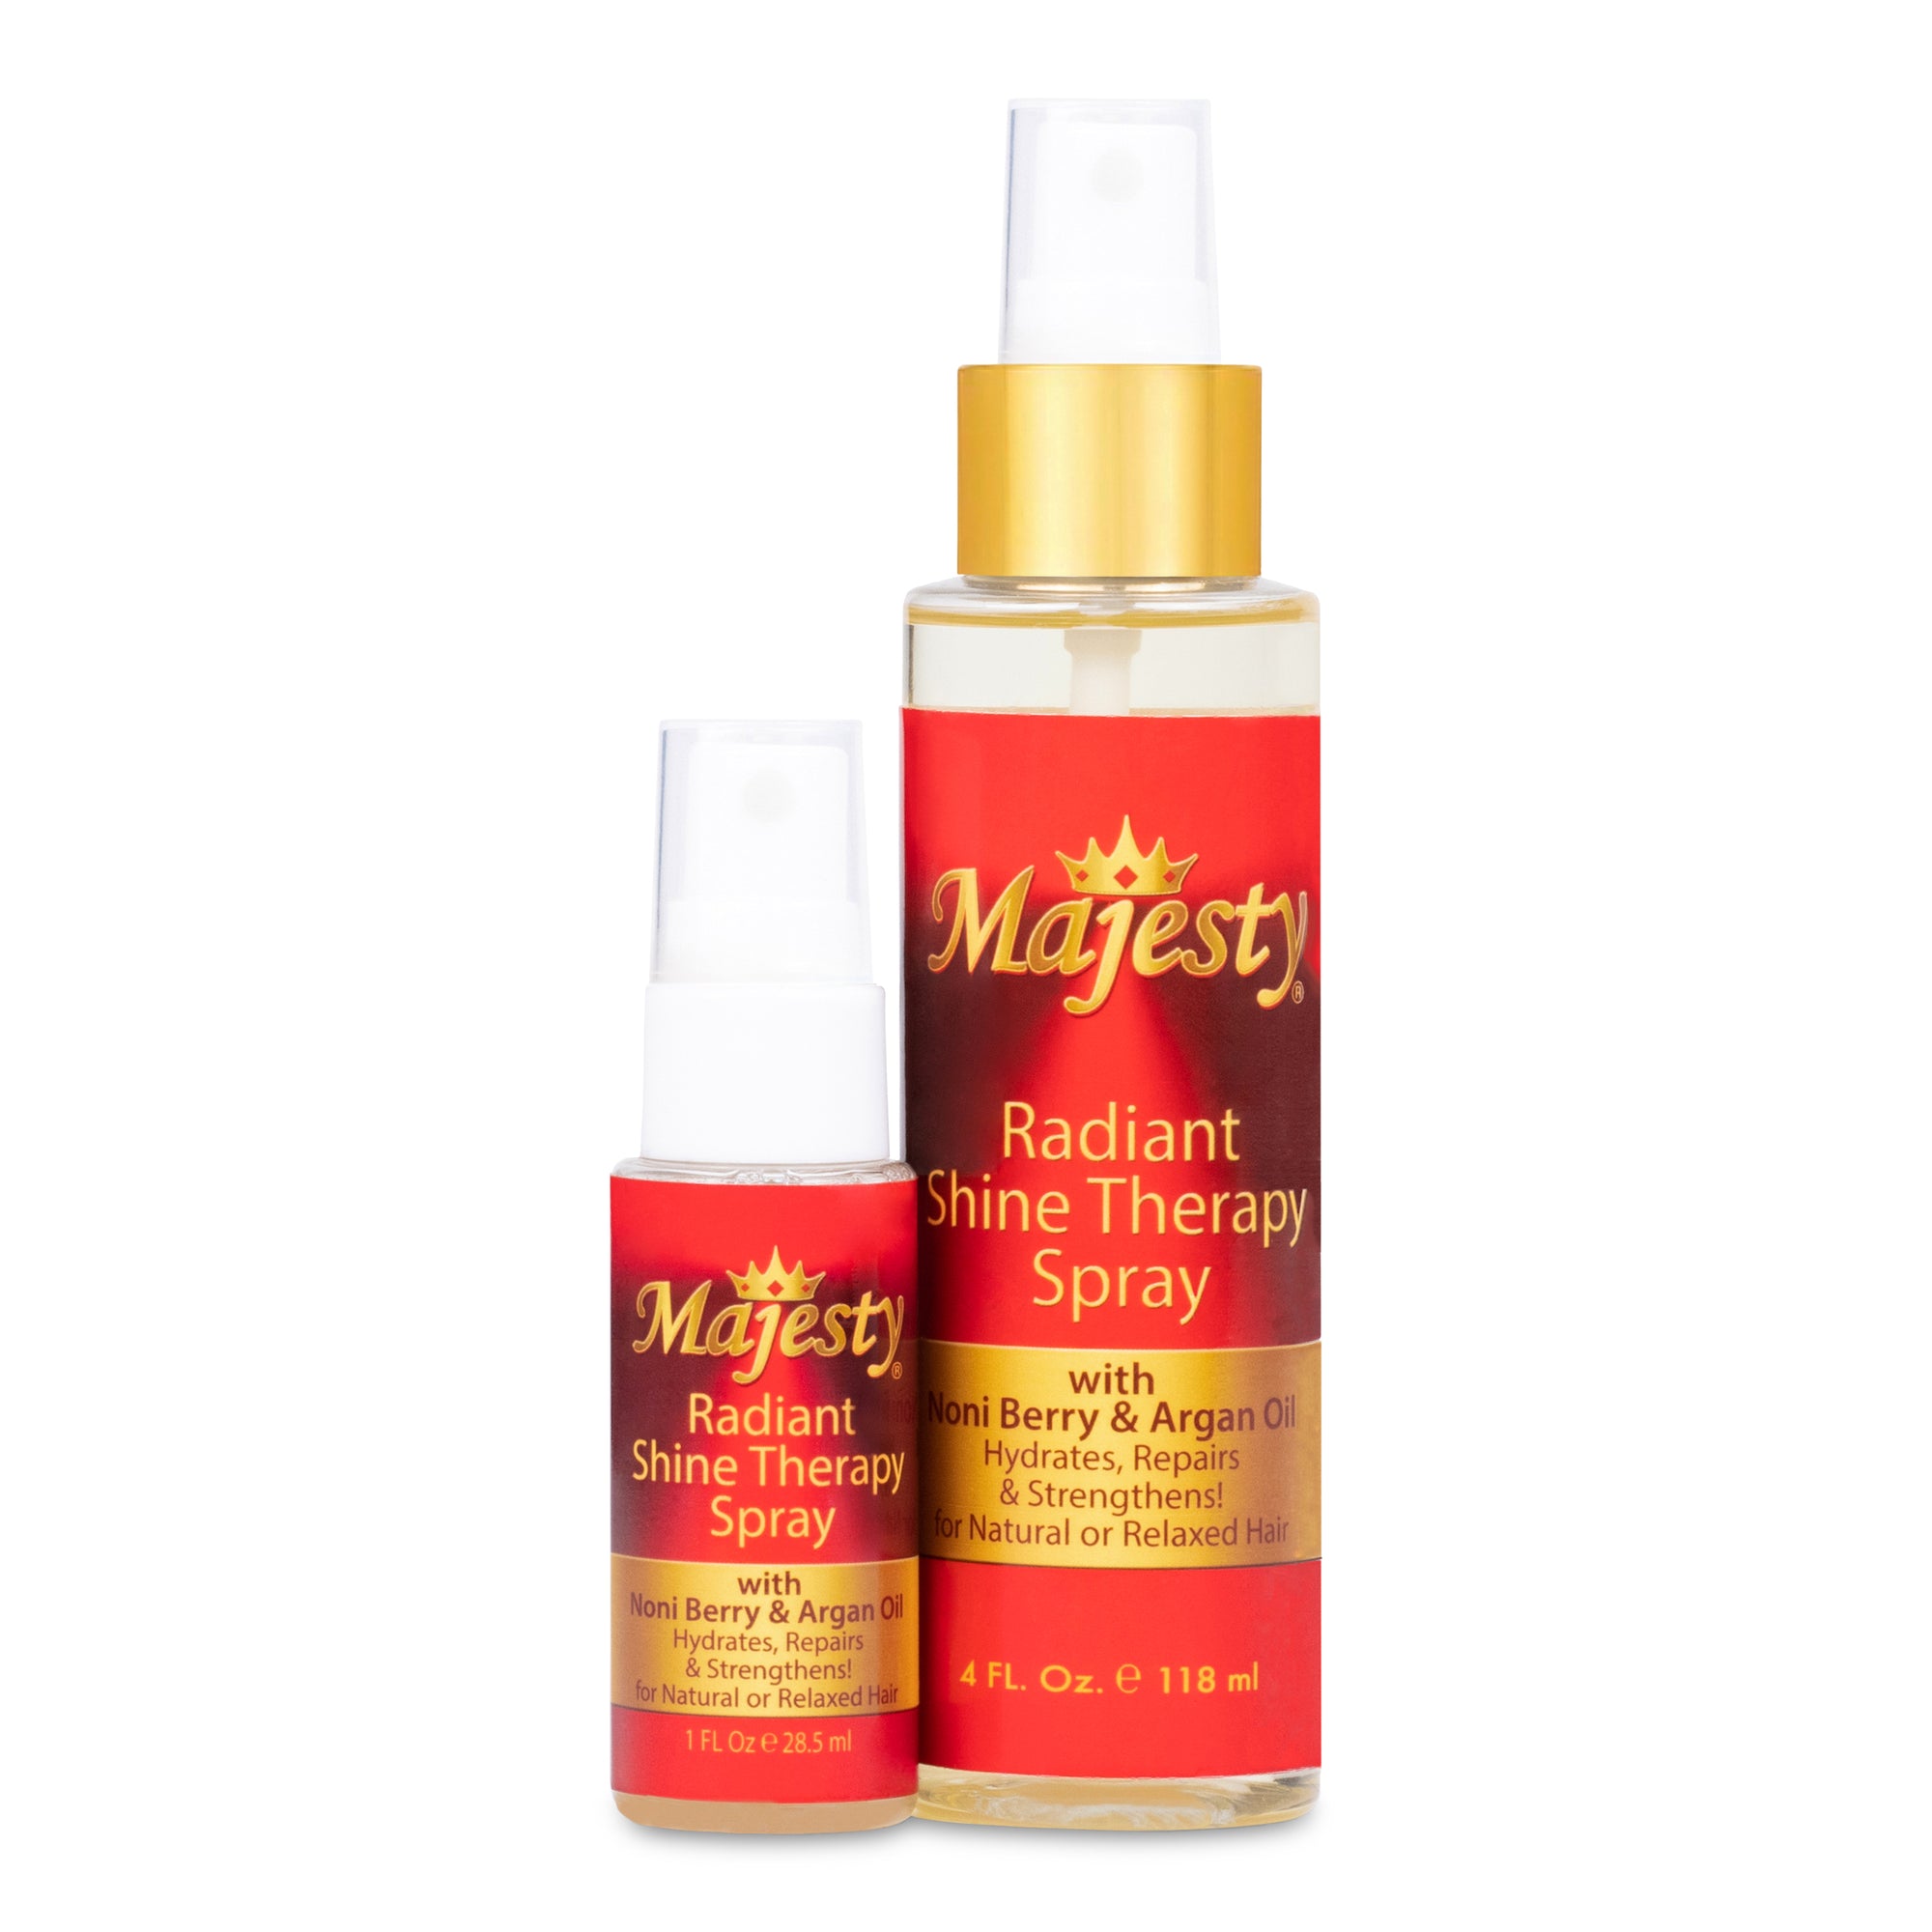 Majesty Radiant Shine Therapy Spray 4 oz plus 1 oz travel size